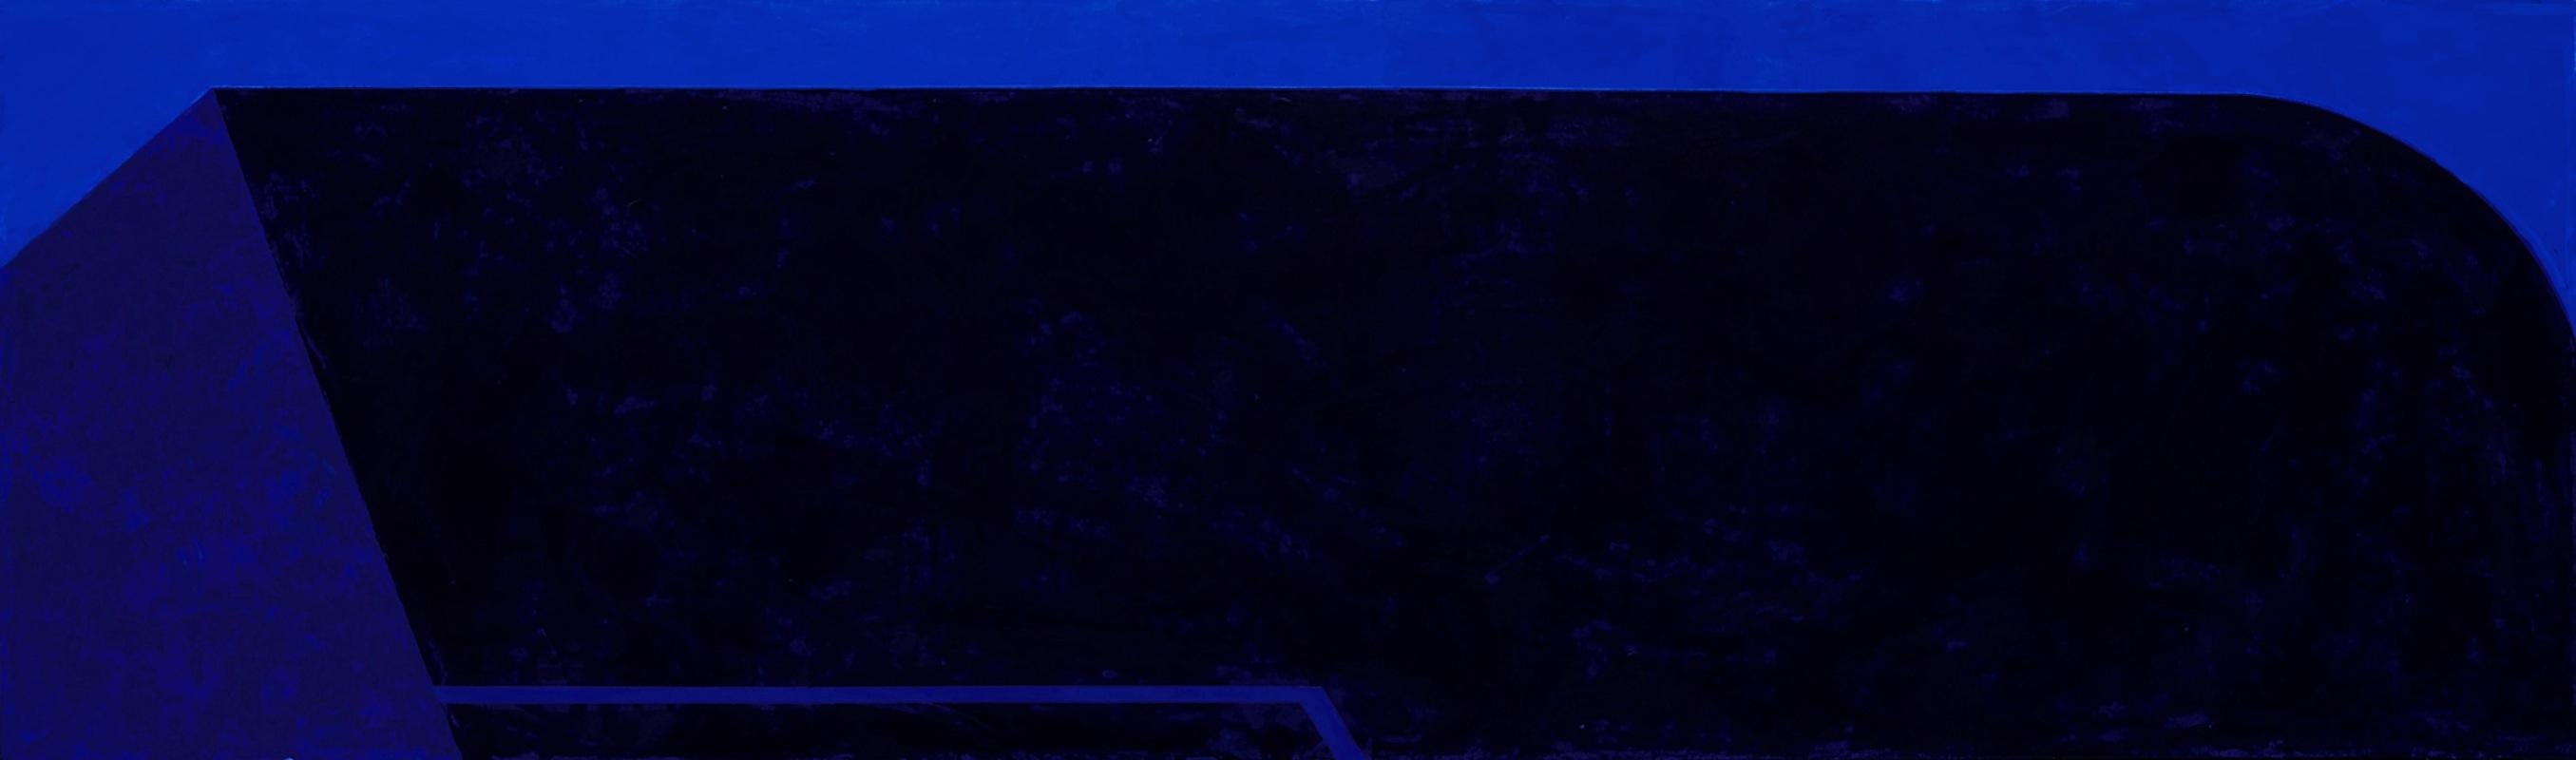 Macyn Bolt, Dark Pool I, acrylic on canvas, Minimalist, 18 x 60, 2018 For Sale 2